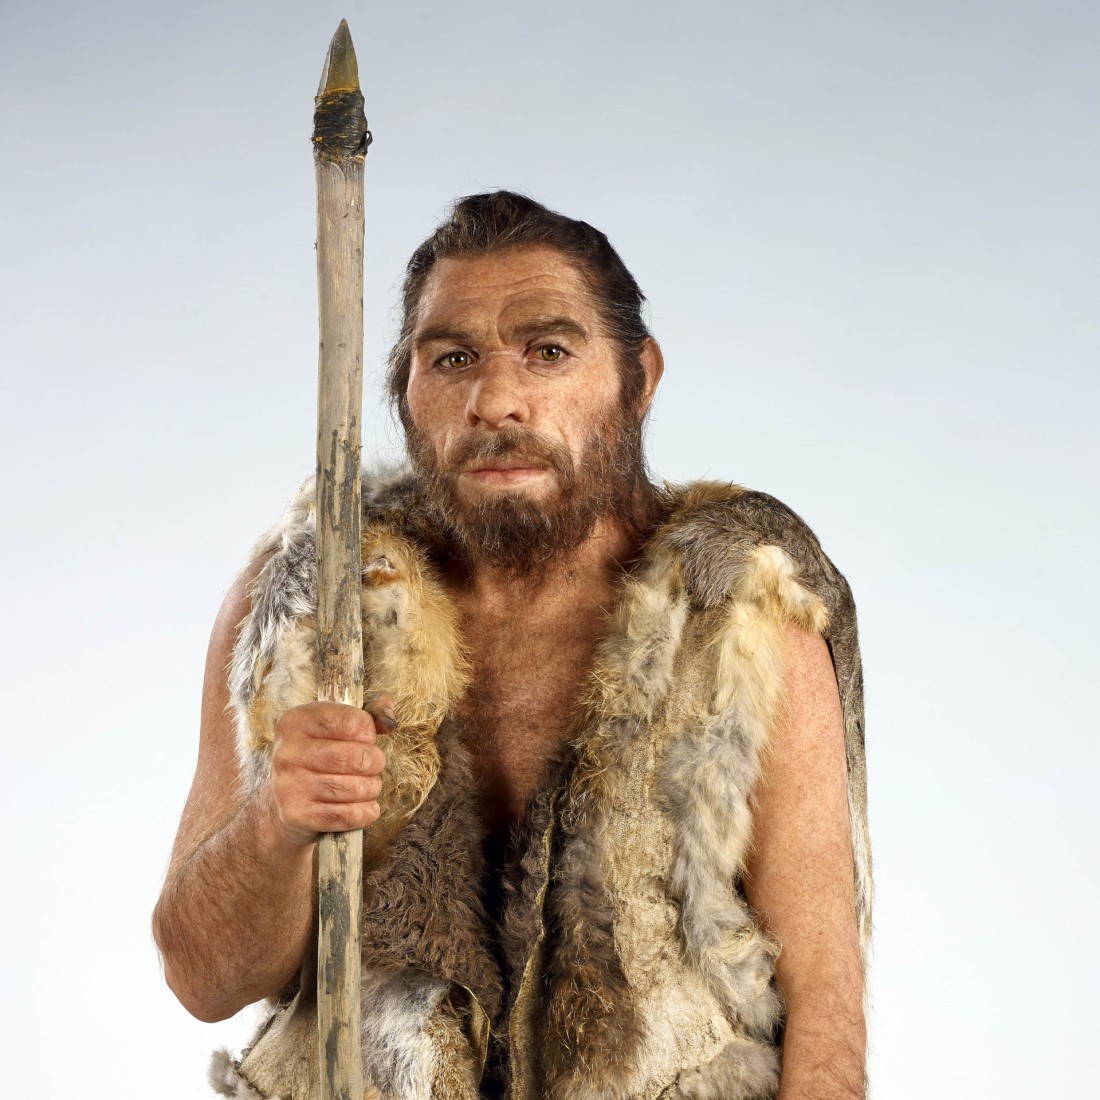 Die Rekonstruktion des Neandertalers, dessen Skelett im LVR-LandesMuseum verwahrt wird. Die Rekonstruktion wurde von der französischen Künstlerin Élisabeth Daynès erstellt. Foto: J. Vogel, LVR-LandesMuseum Bonn.